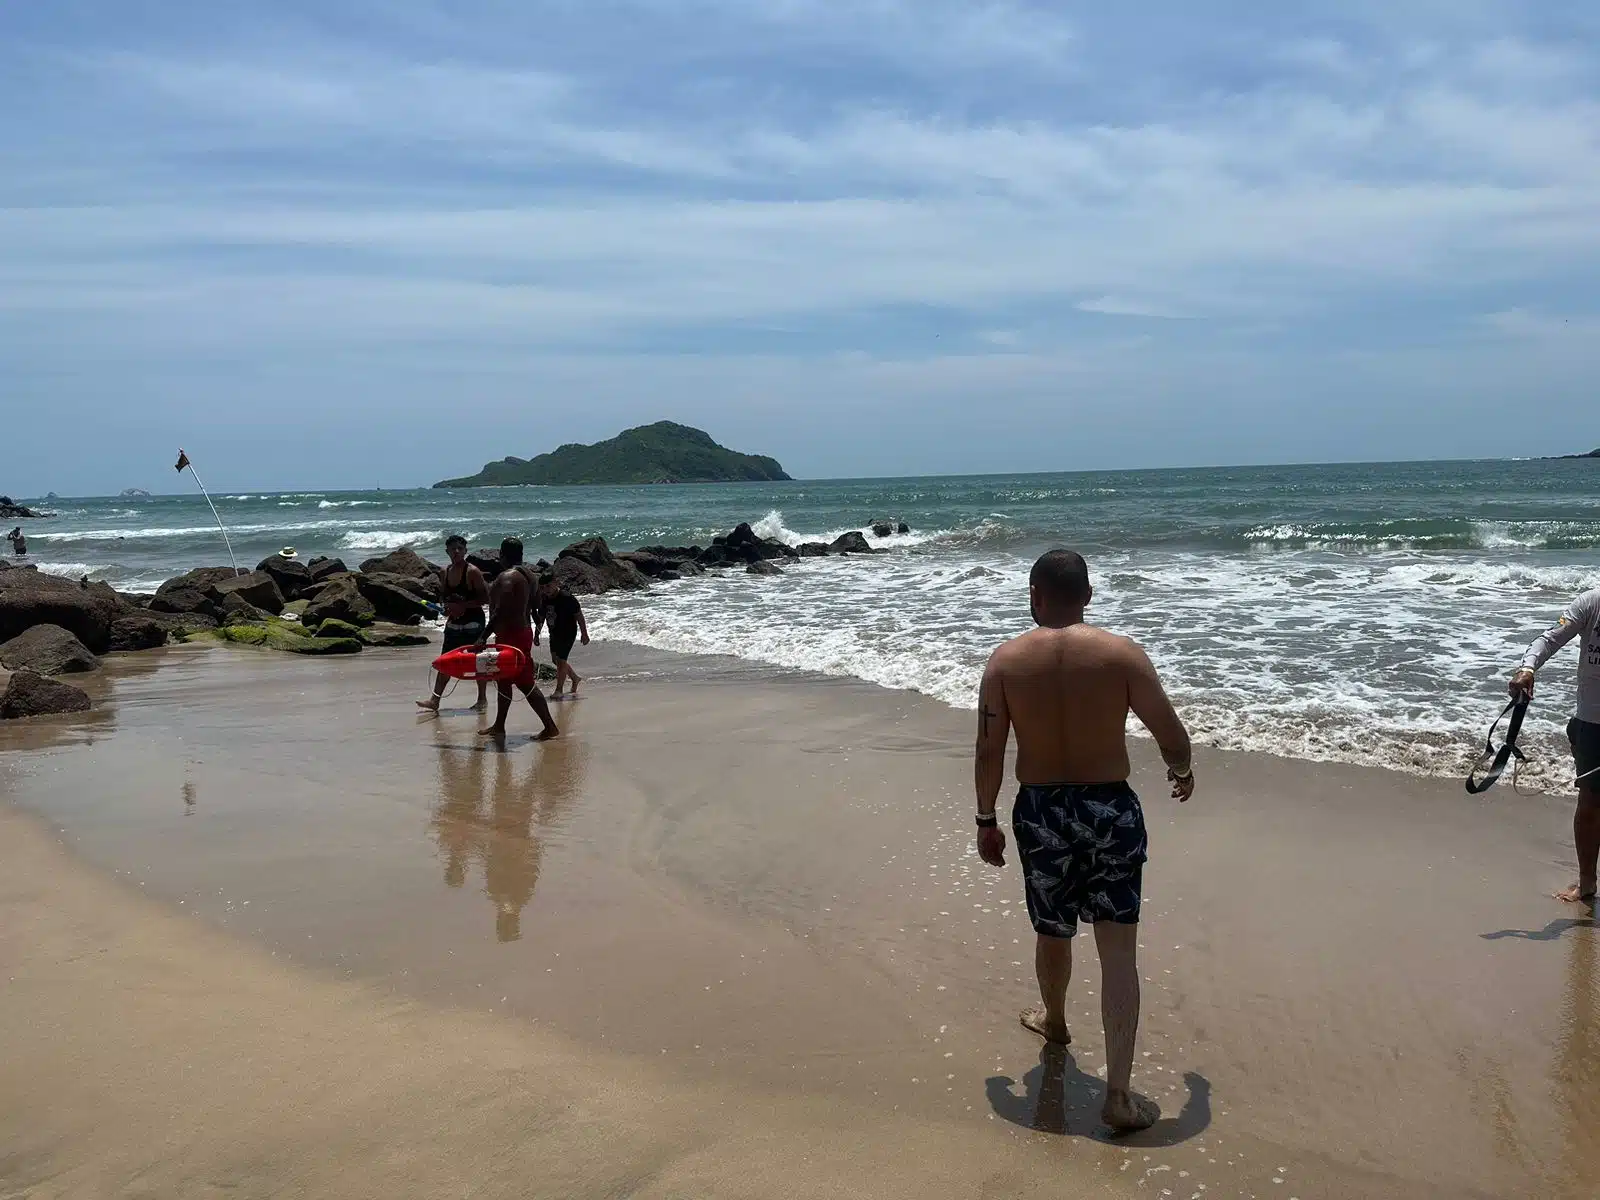 Bañistas rescatados en playa de Mazatlán